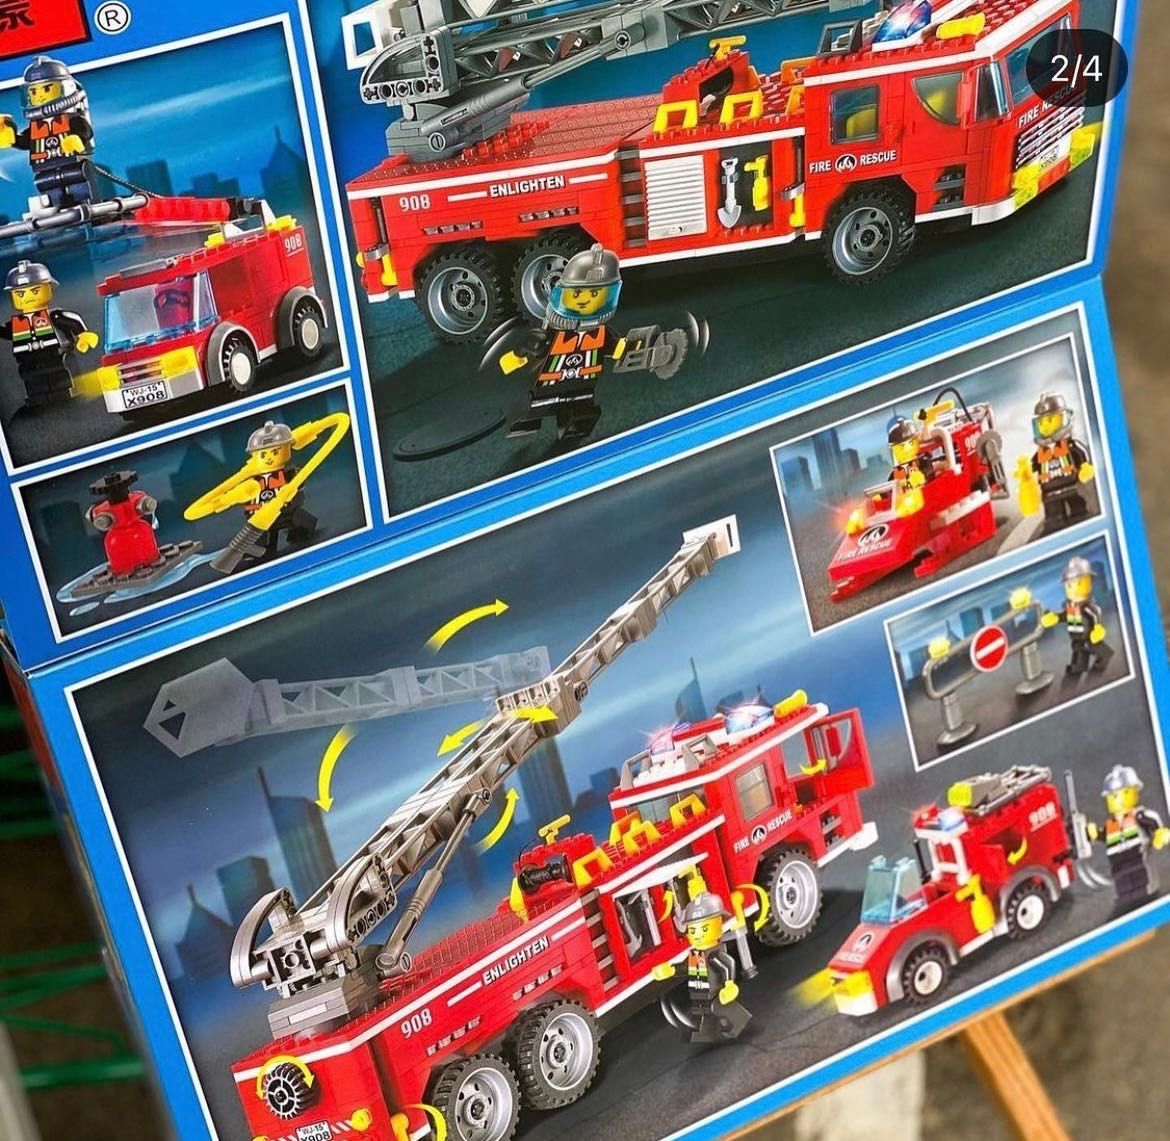 Конструктор brick 908 пожарная машина